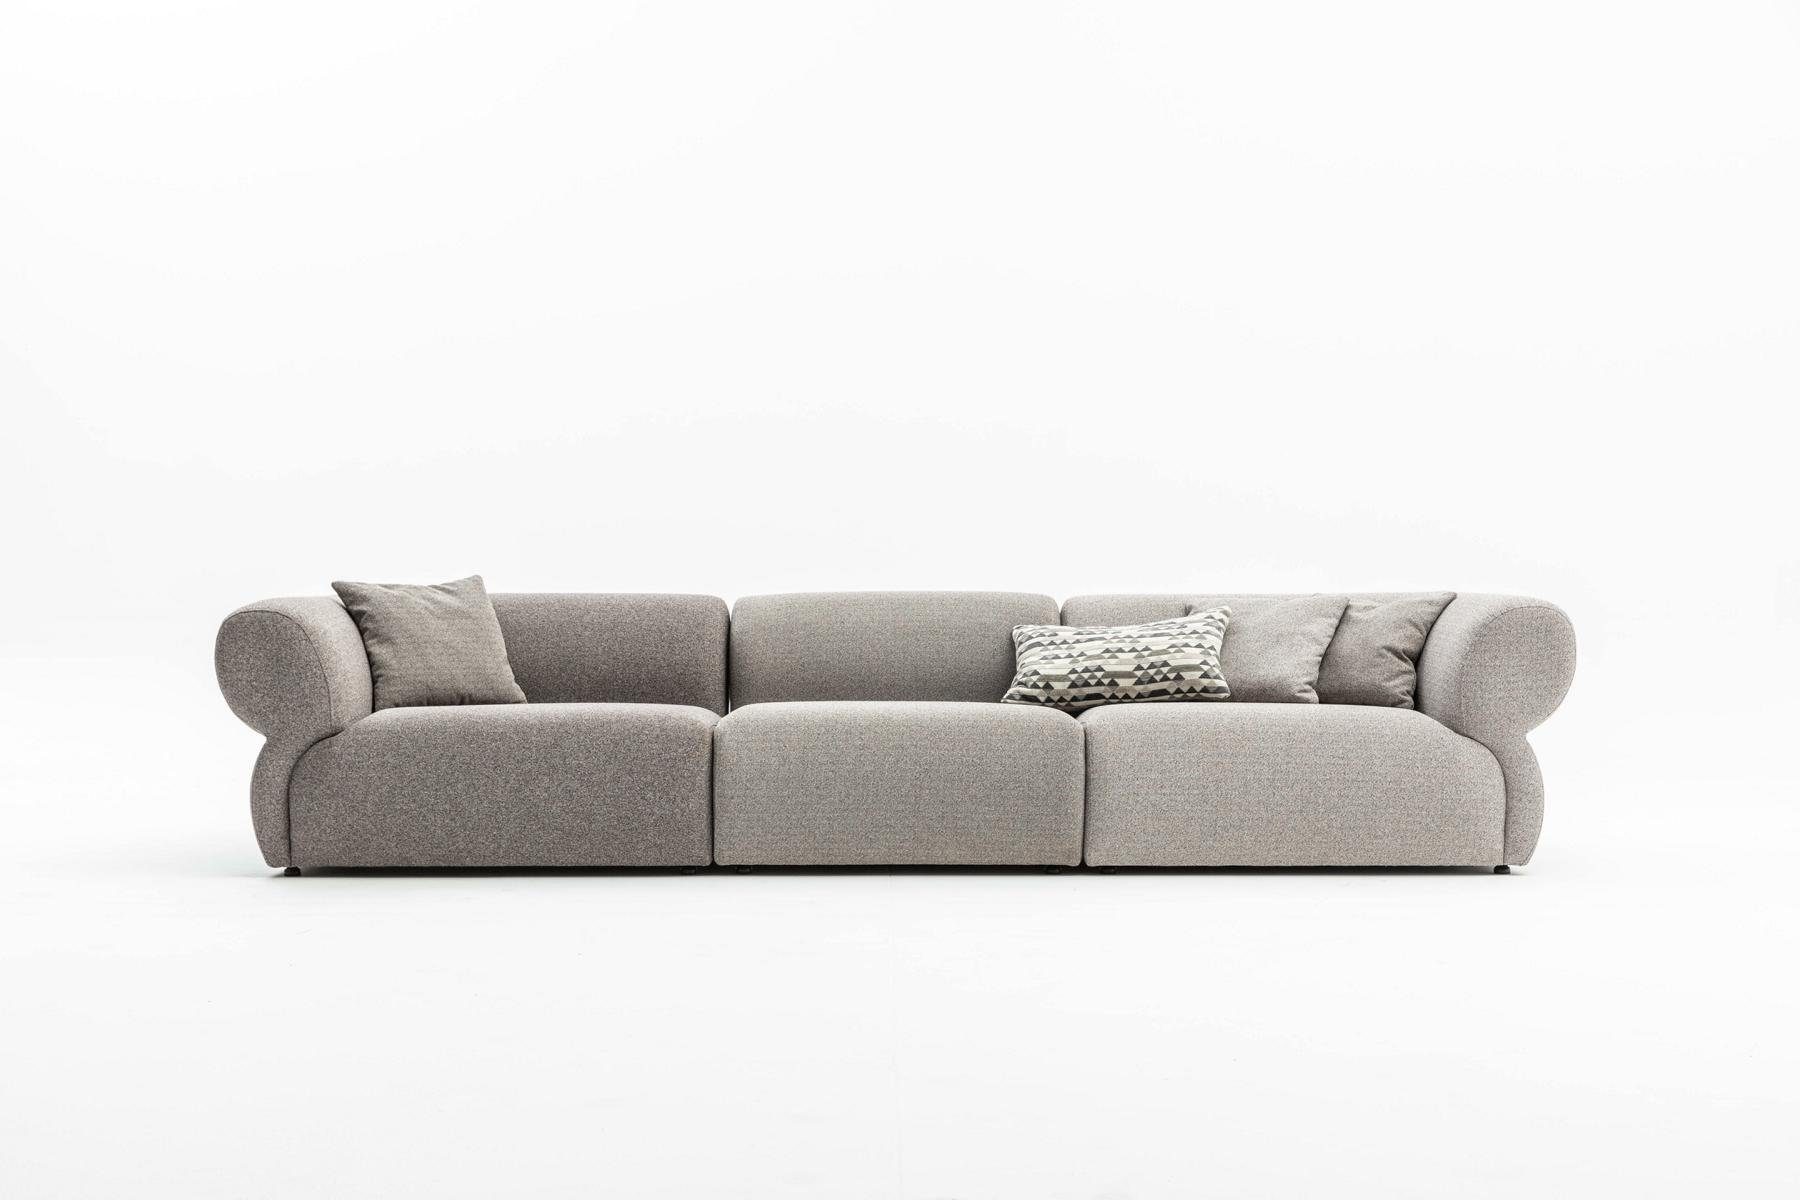 Möbel in Big-Sofa JVmoebel Made 370cm, 5 Sitzer Design Grau Luxus Sofa Wohnzimmer Europe Couch